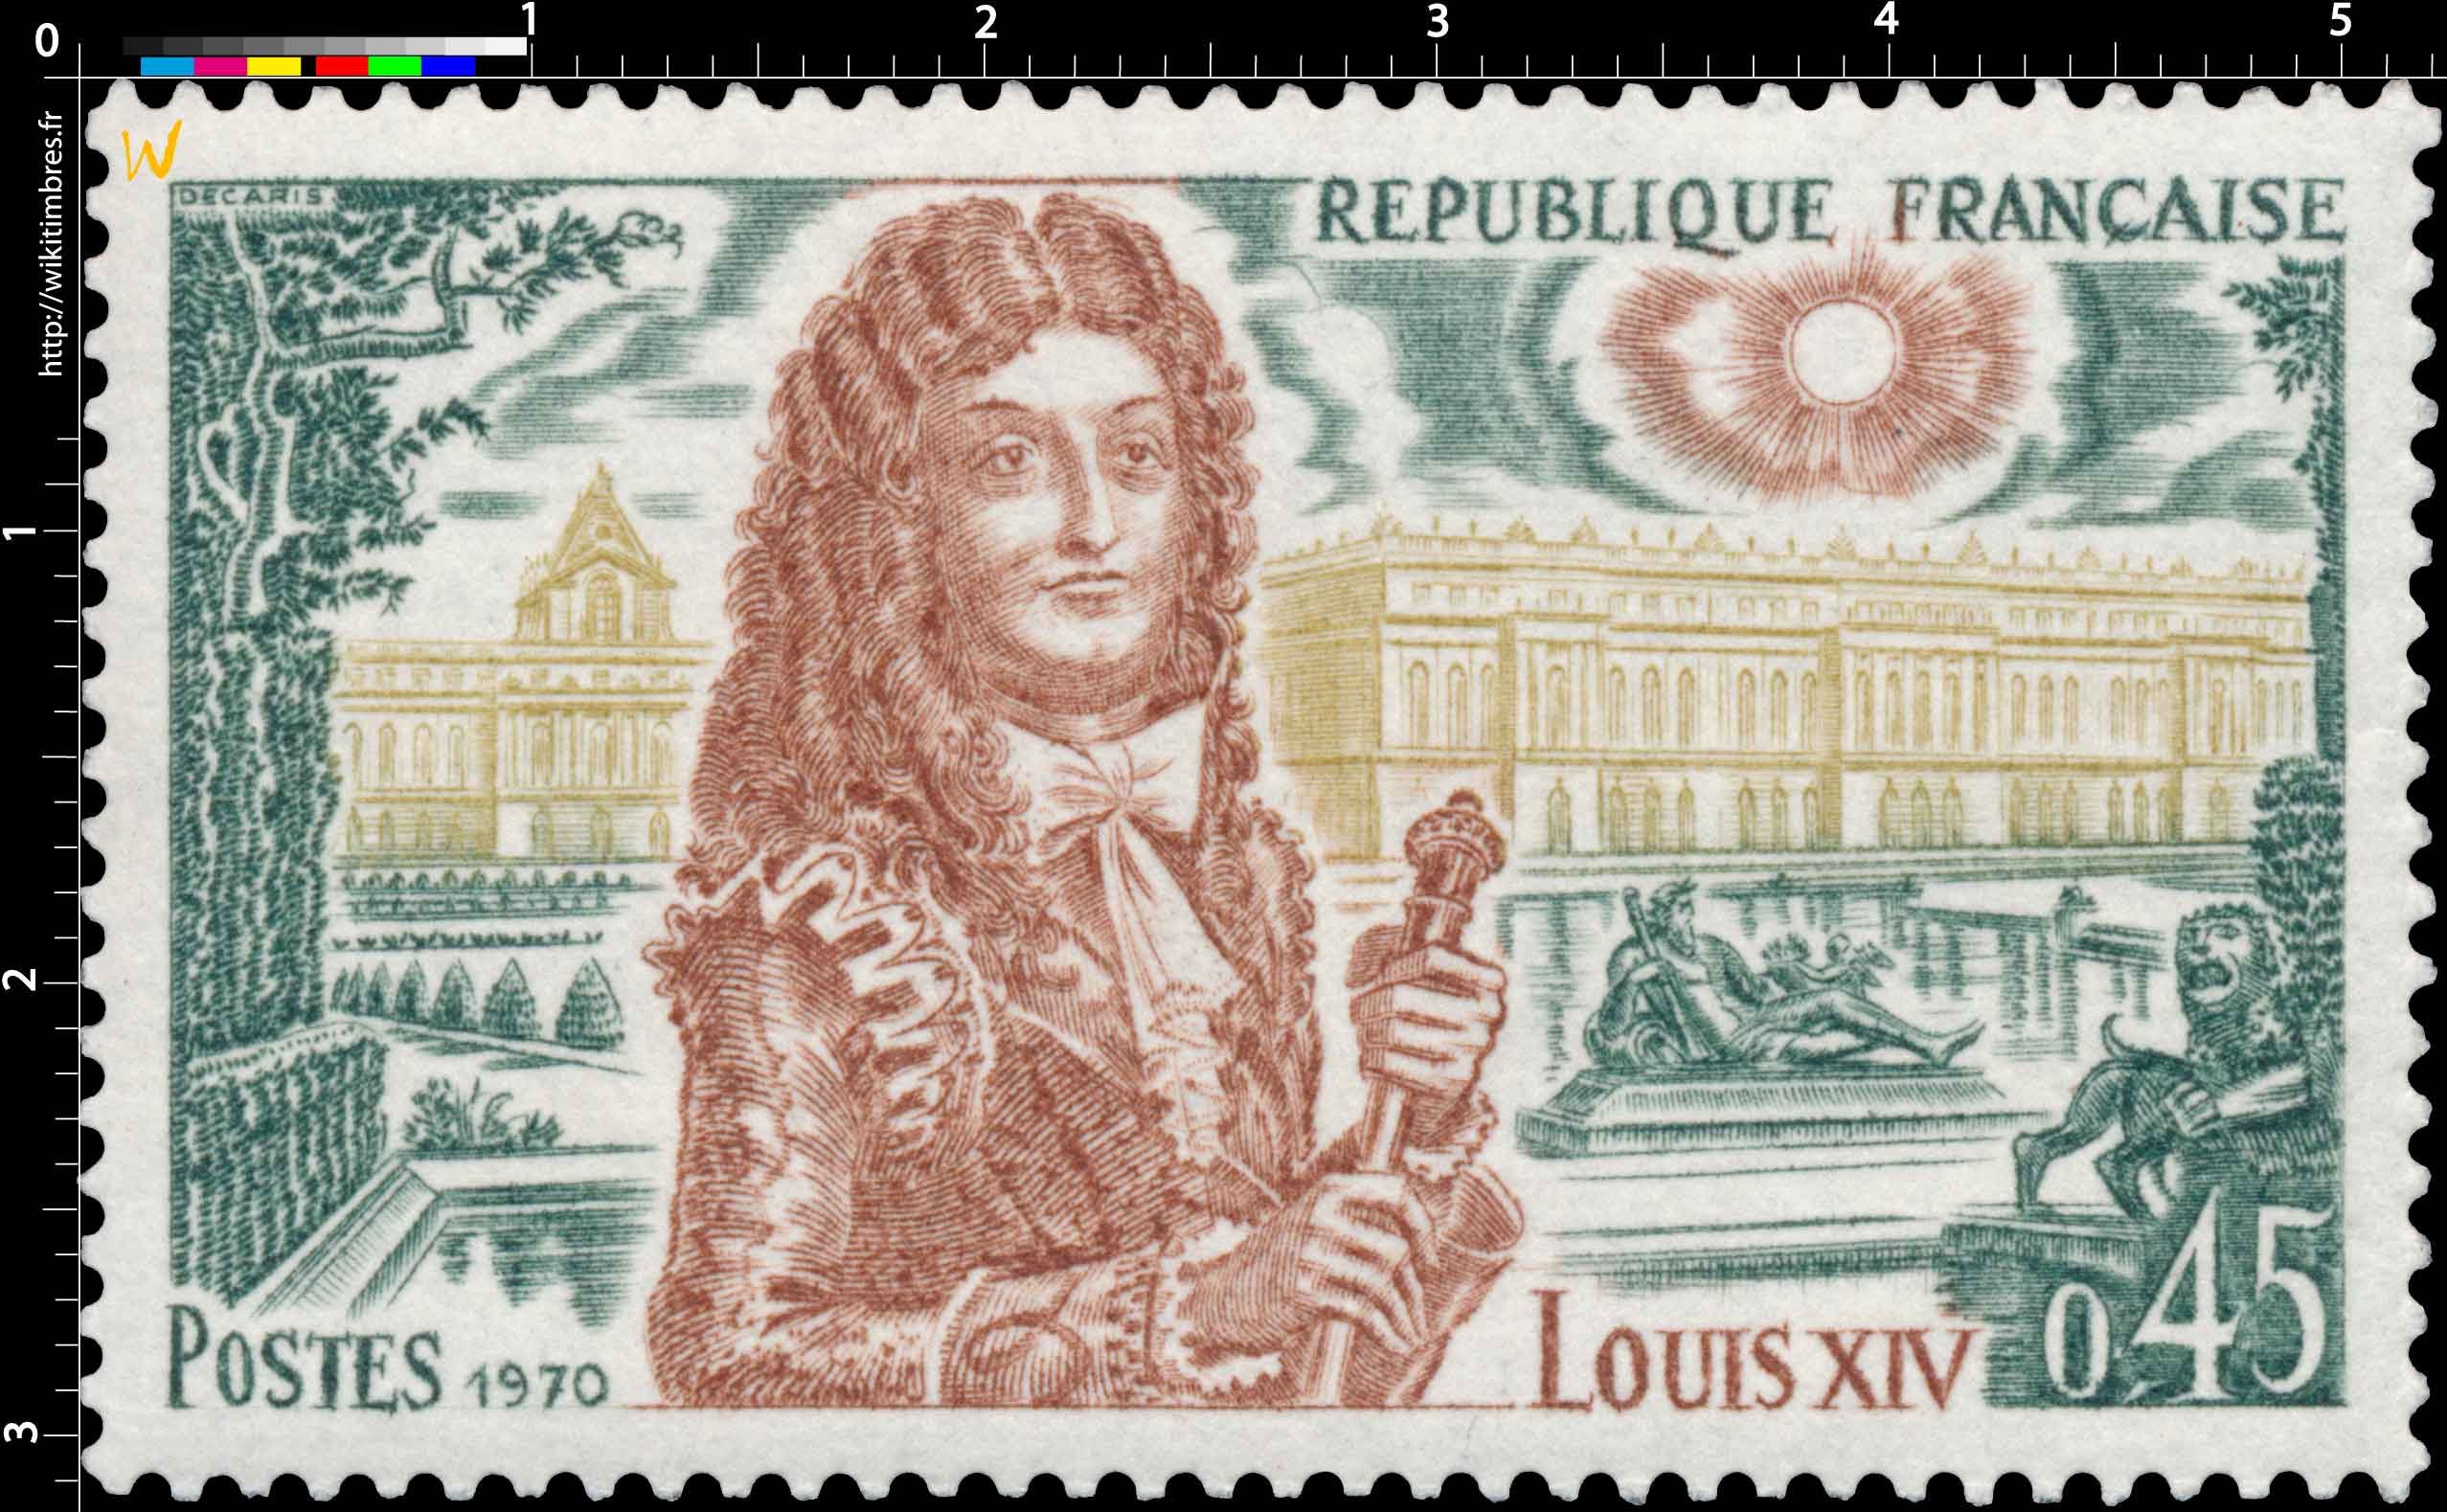 1970 LOUIS XIV